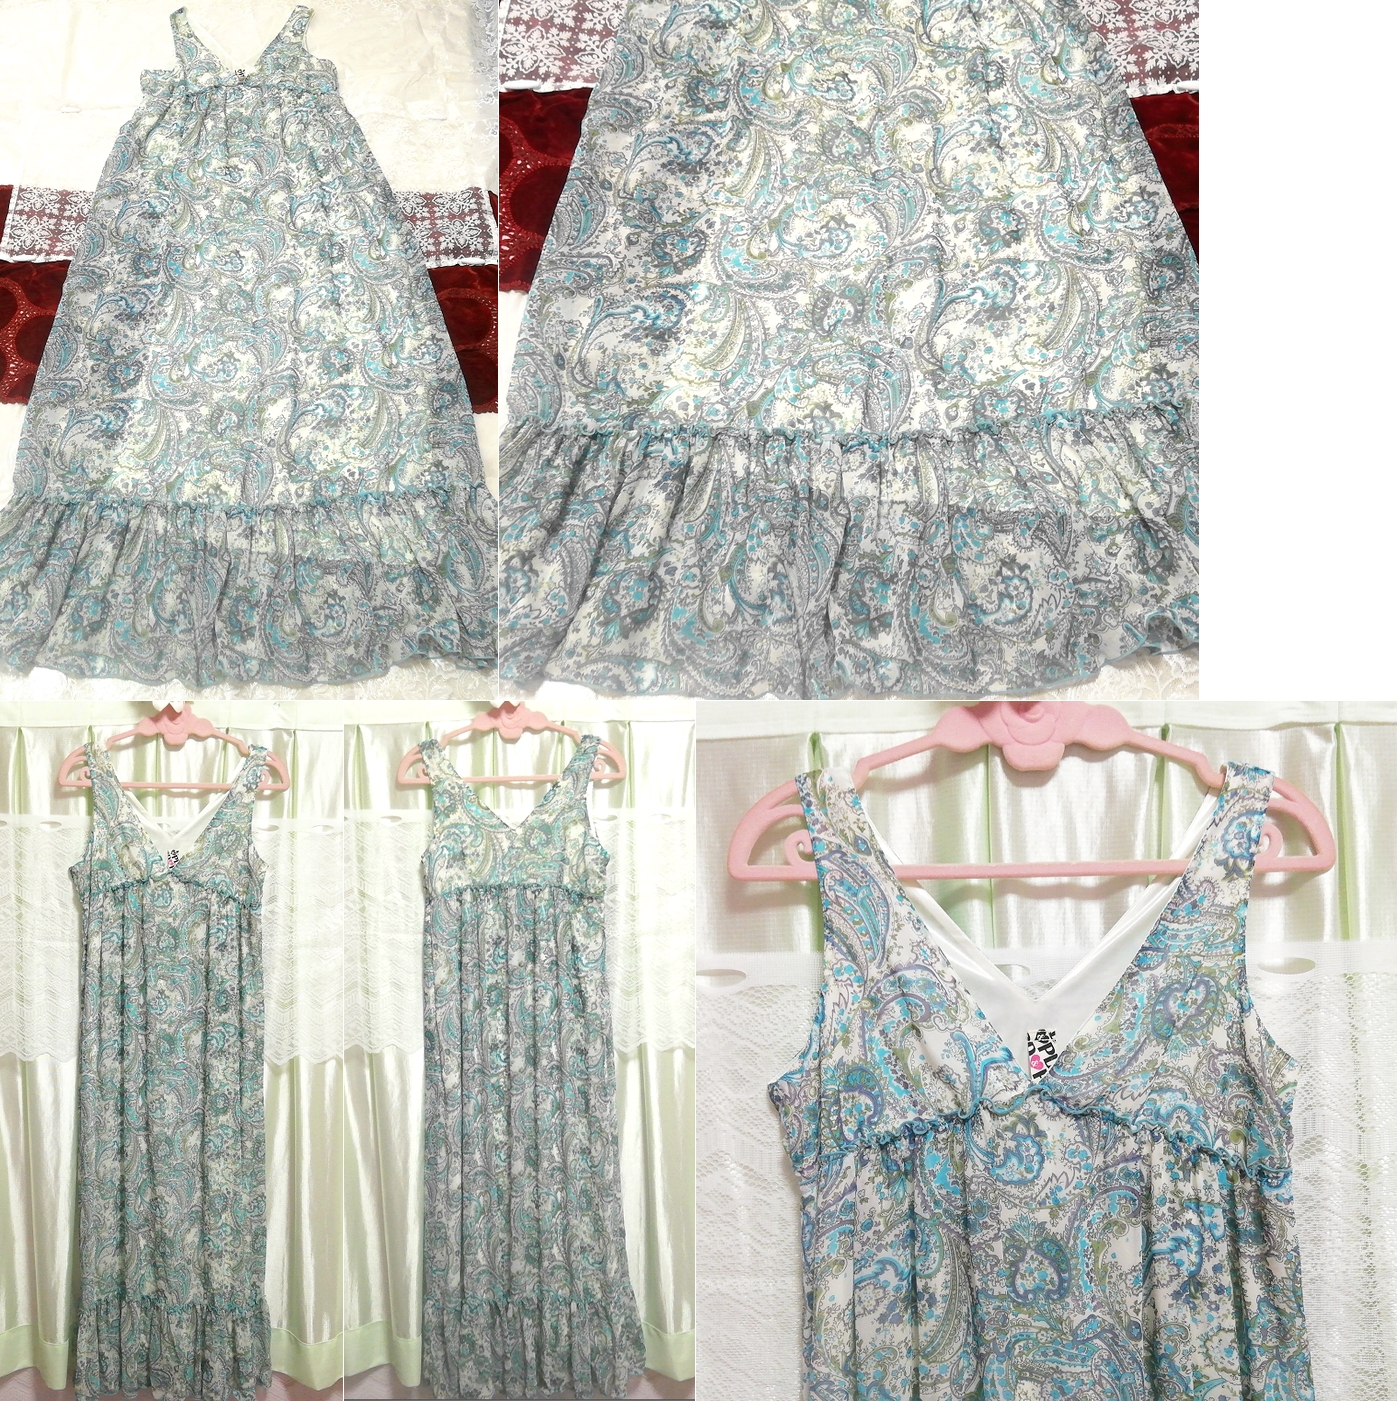 Patina ethnic pattern chiffon sleeveless maxi negligee nightgown nightwear dress, long skirt, m size